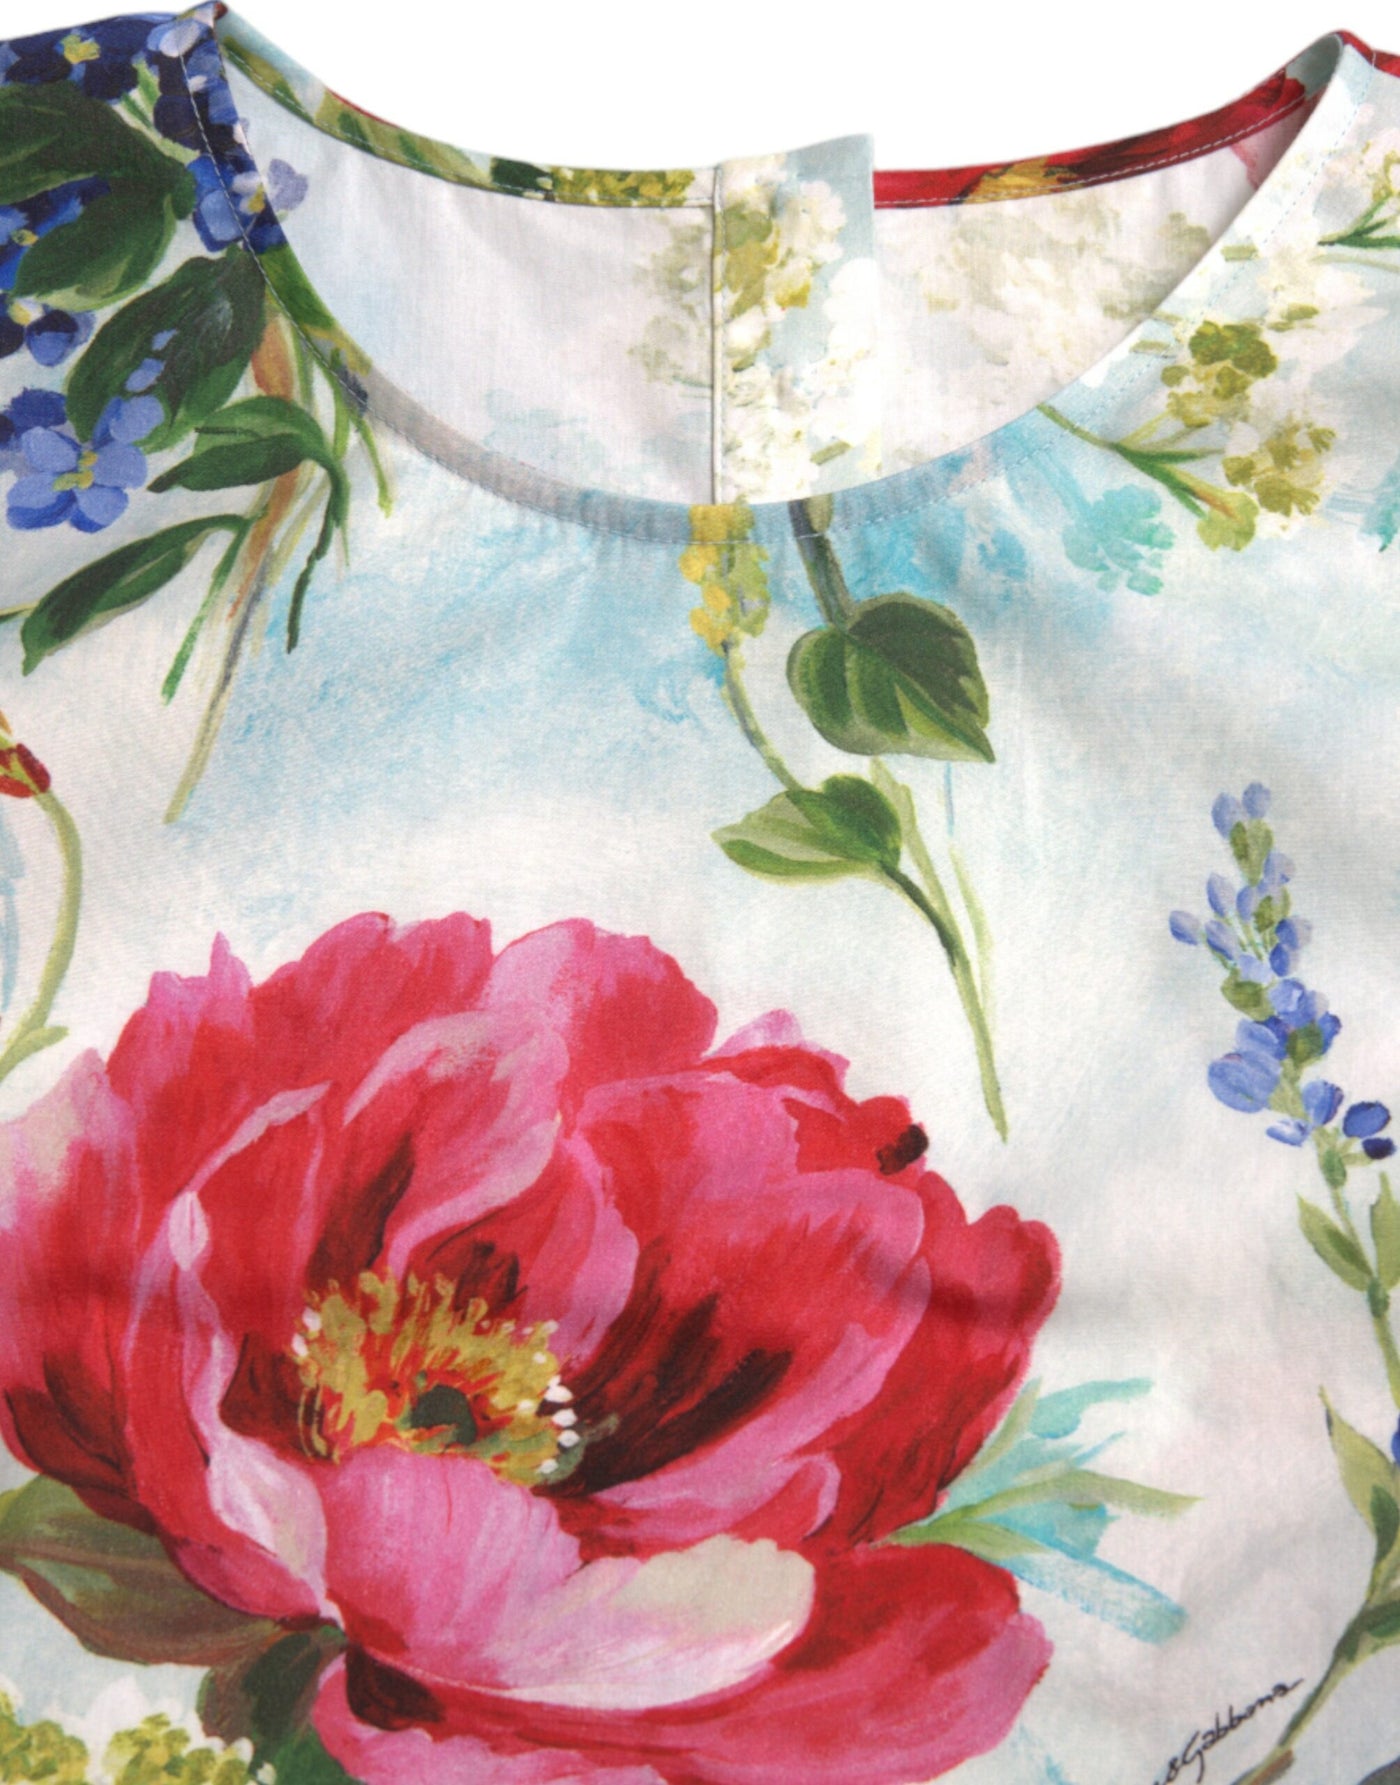 Dolce & Gabbana Multicolor Floral Cotton Round Neck Blouse Top